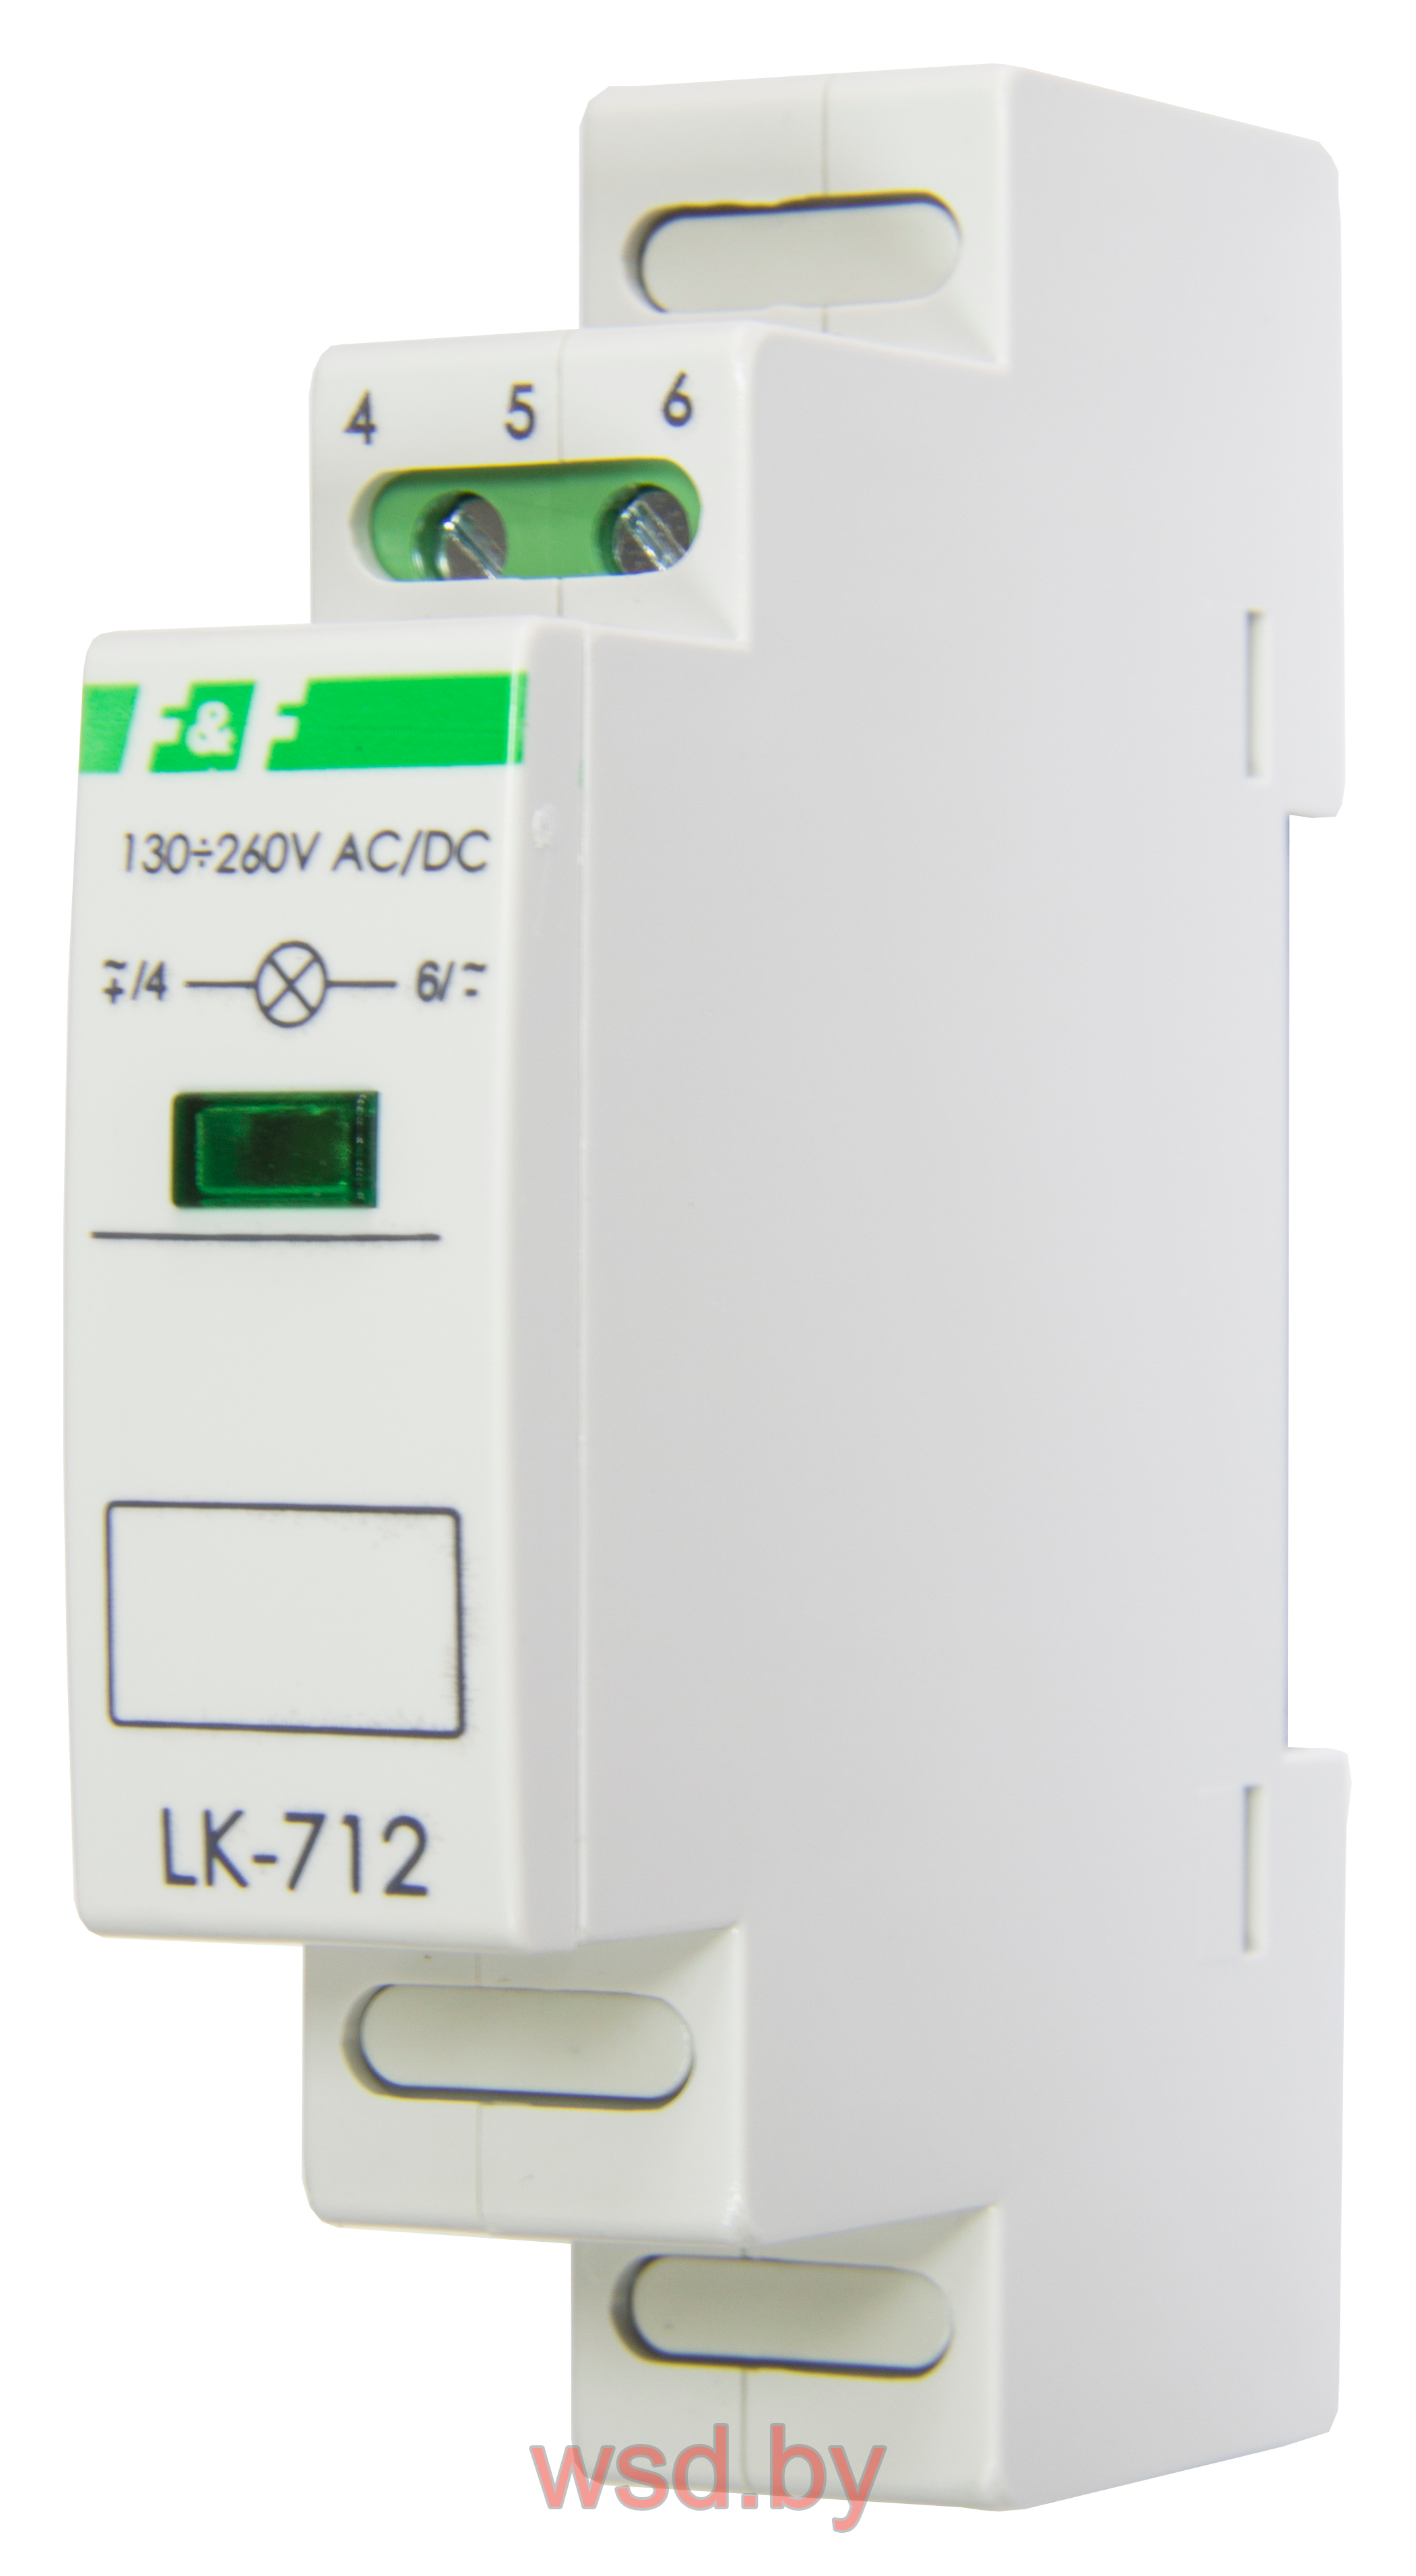 Указатель напряжения LK-712-R-3 сигнализация наличия одной фазы, цвет КРАСНЫЙ,  1 модуль, монтаж на DIN-рейке 30-130 В AC/DC IP20